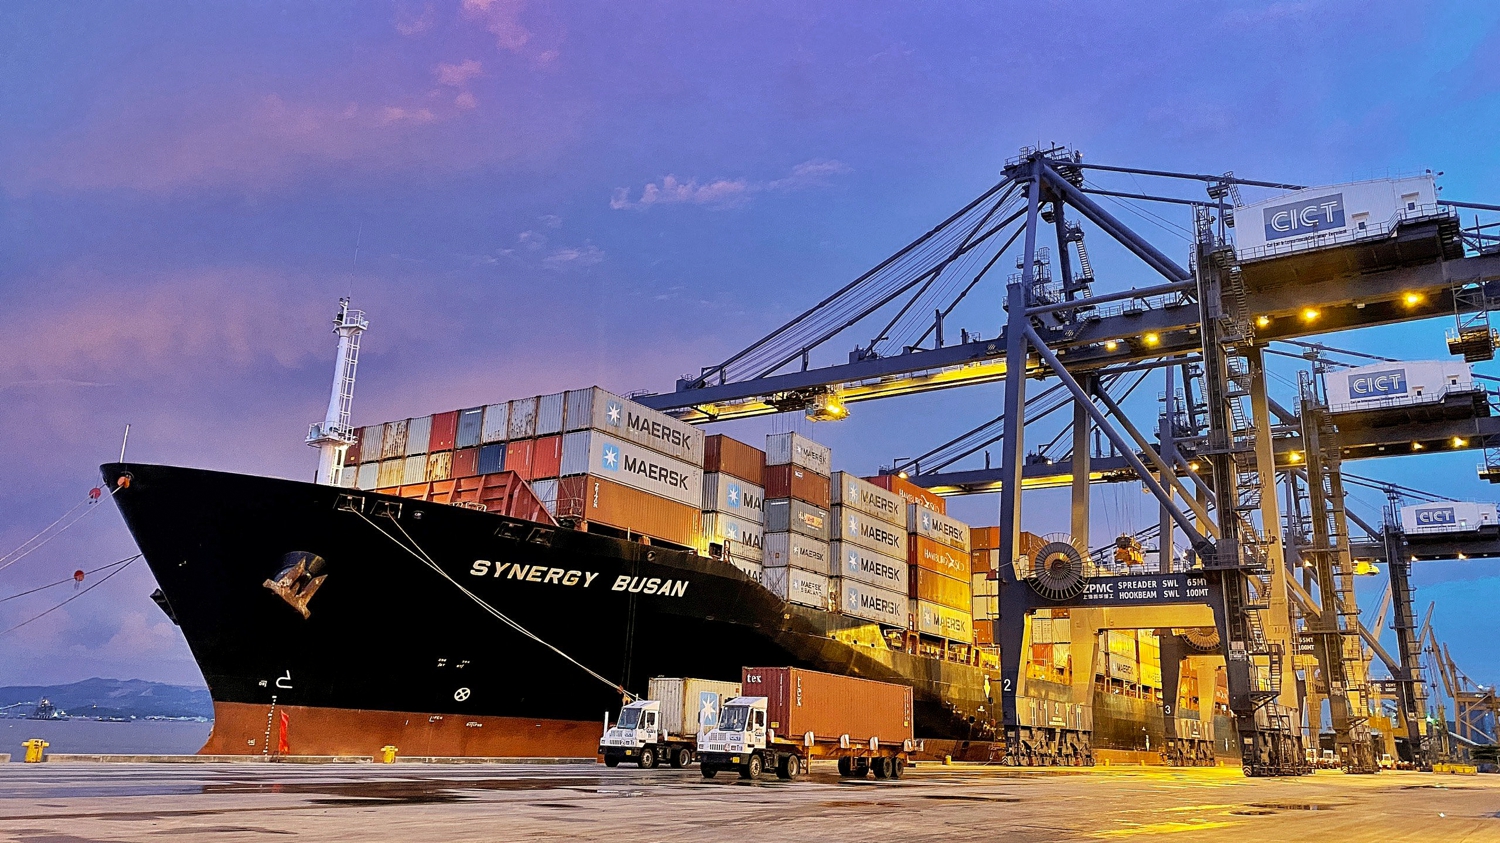 Những chuyến tàu ra vào cảng an toàn đóng góp lớn duy trì chuỗi cung ứng hàng hóa, phát triển kinh tế biển